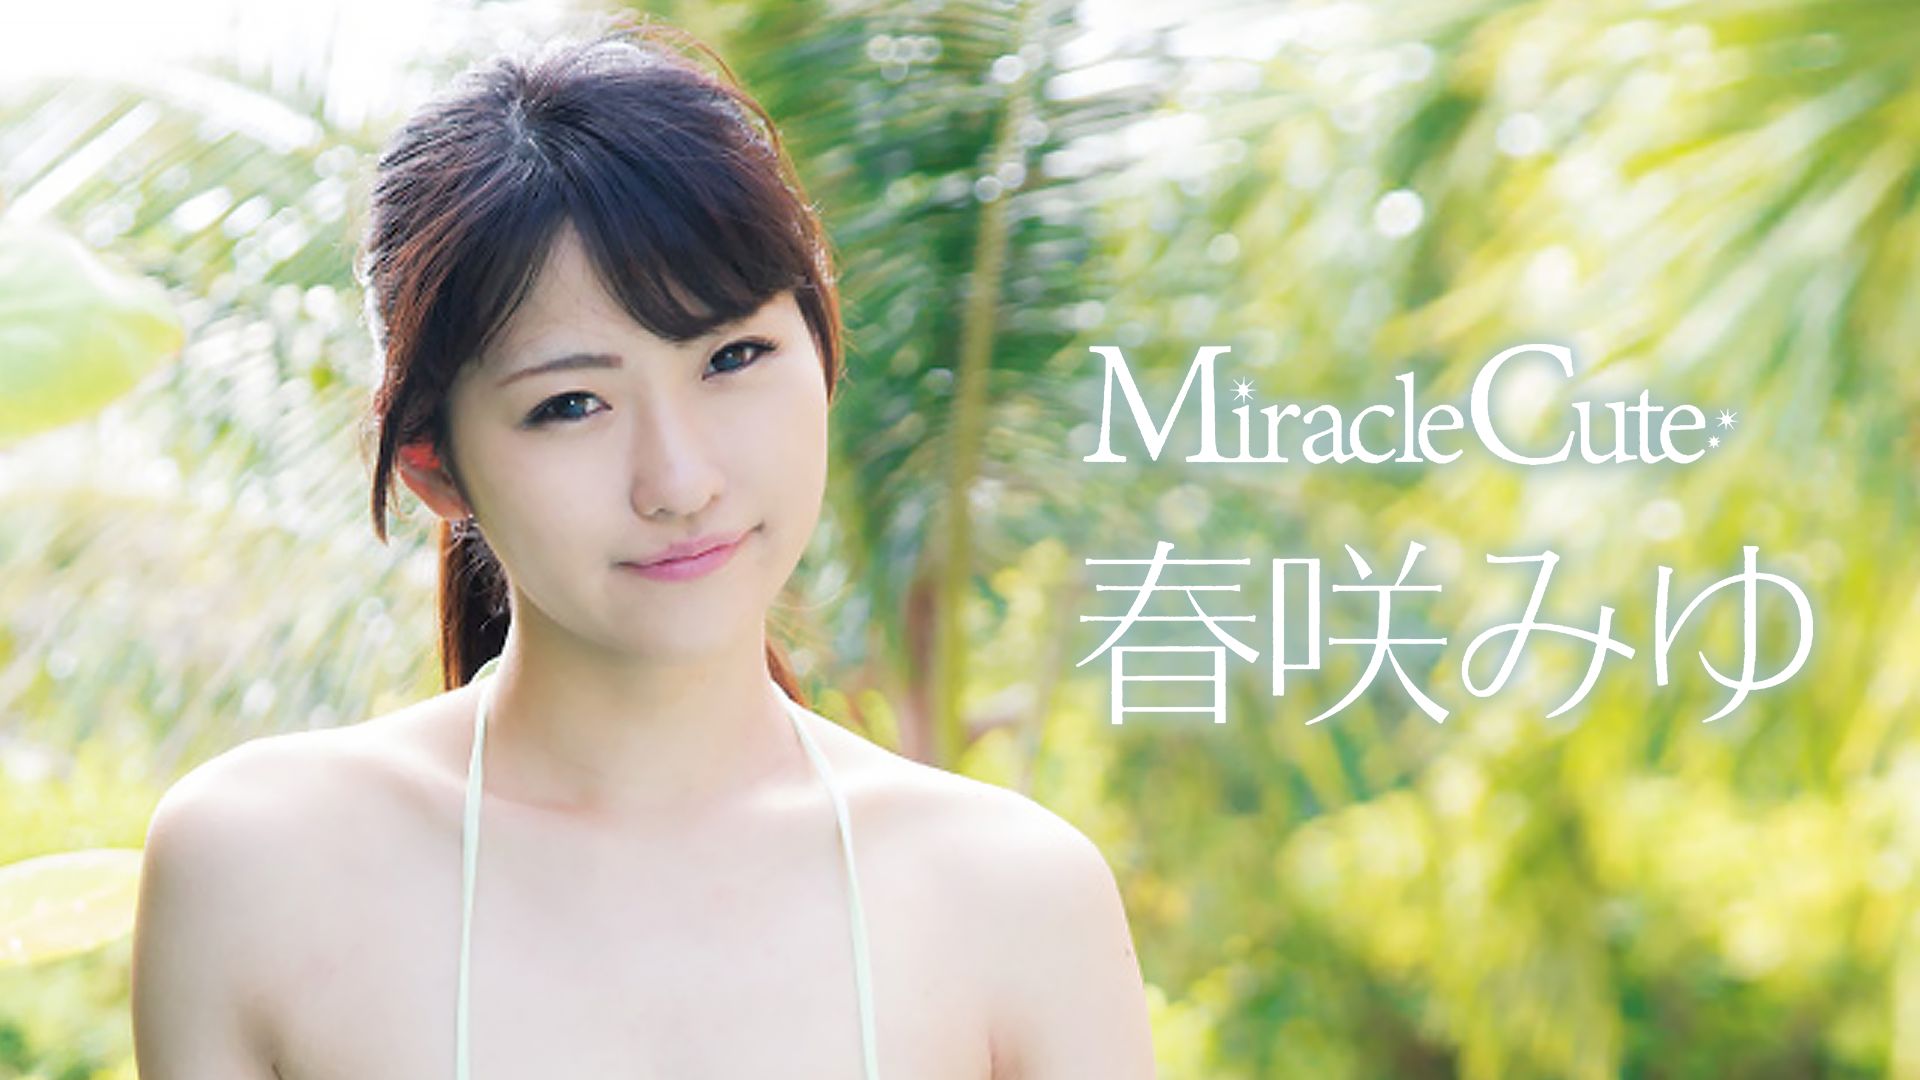 春咲みゆ『Miraclecute』